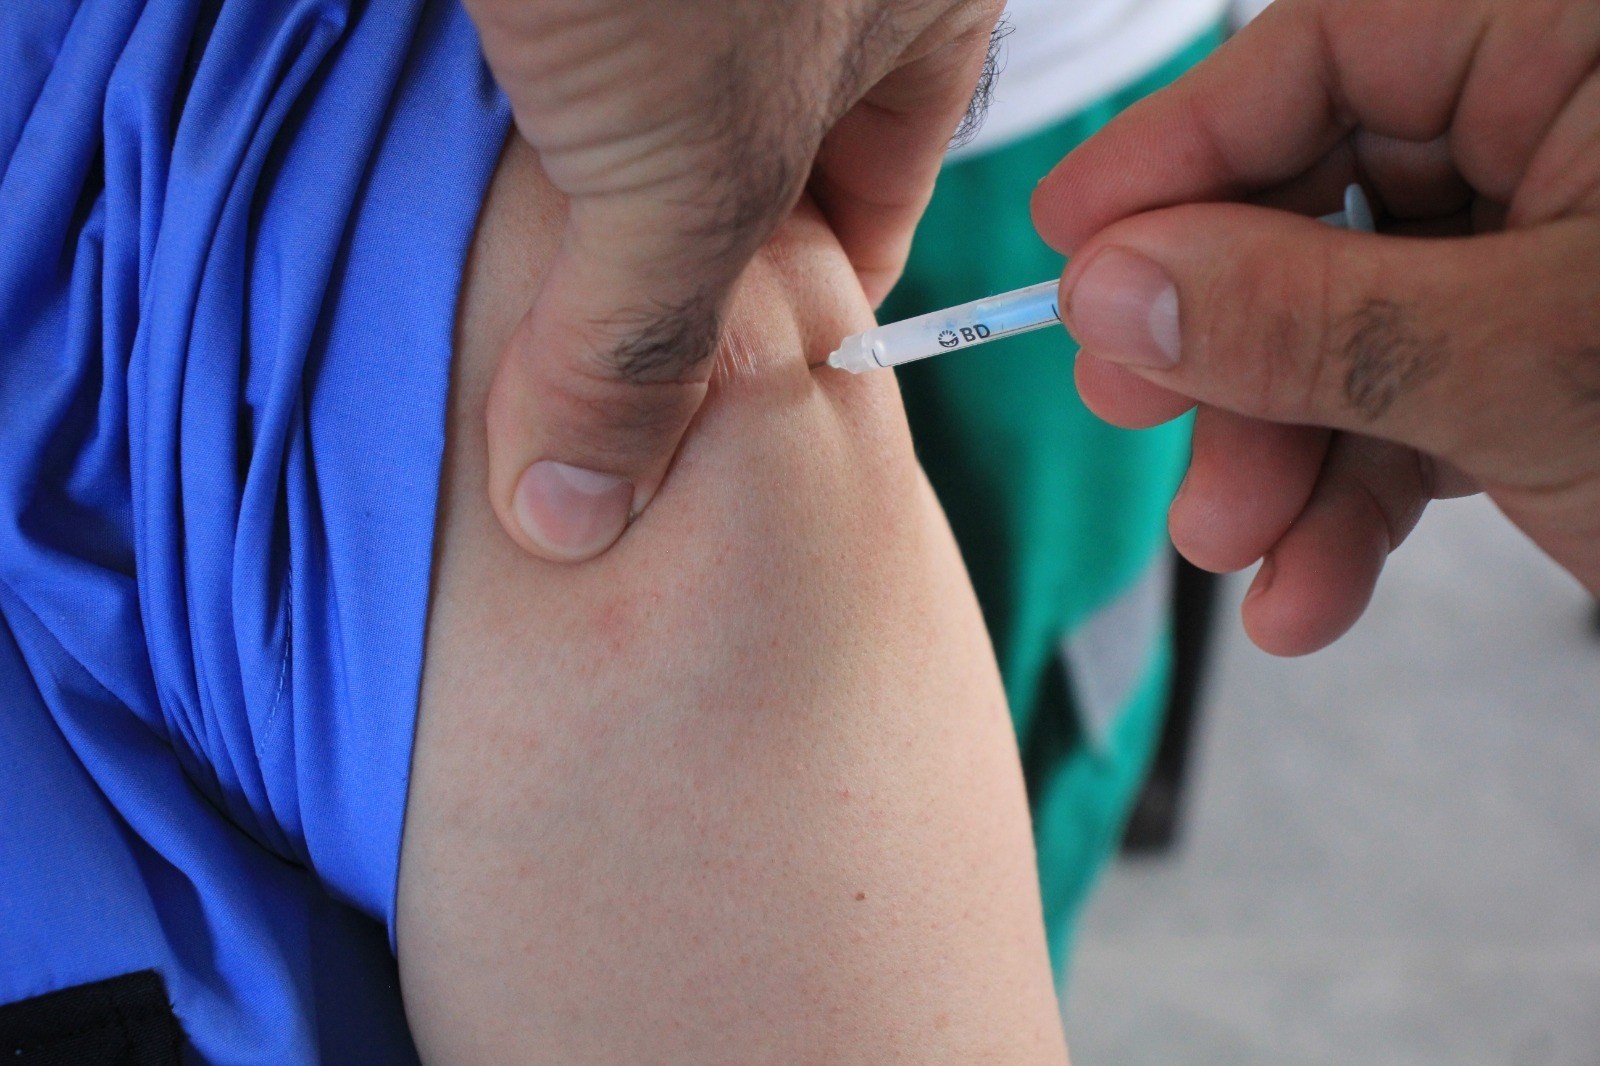 داخلية غزة تبدأ بتطعيم كافة كوادرها ومنتسبيها بلقاح مضاد لـ"كورونا"